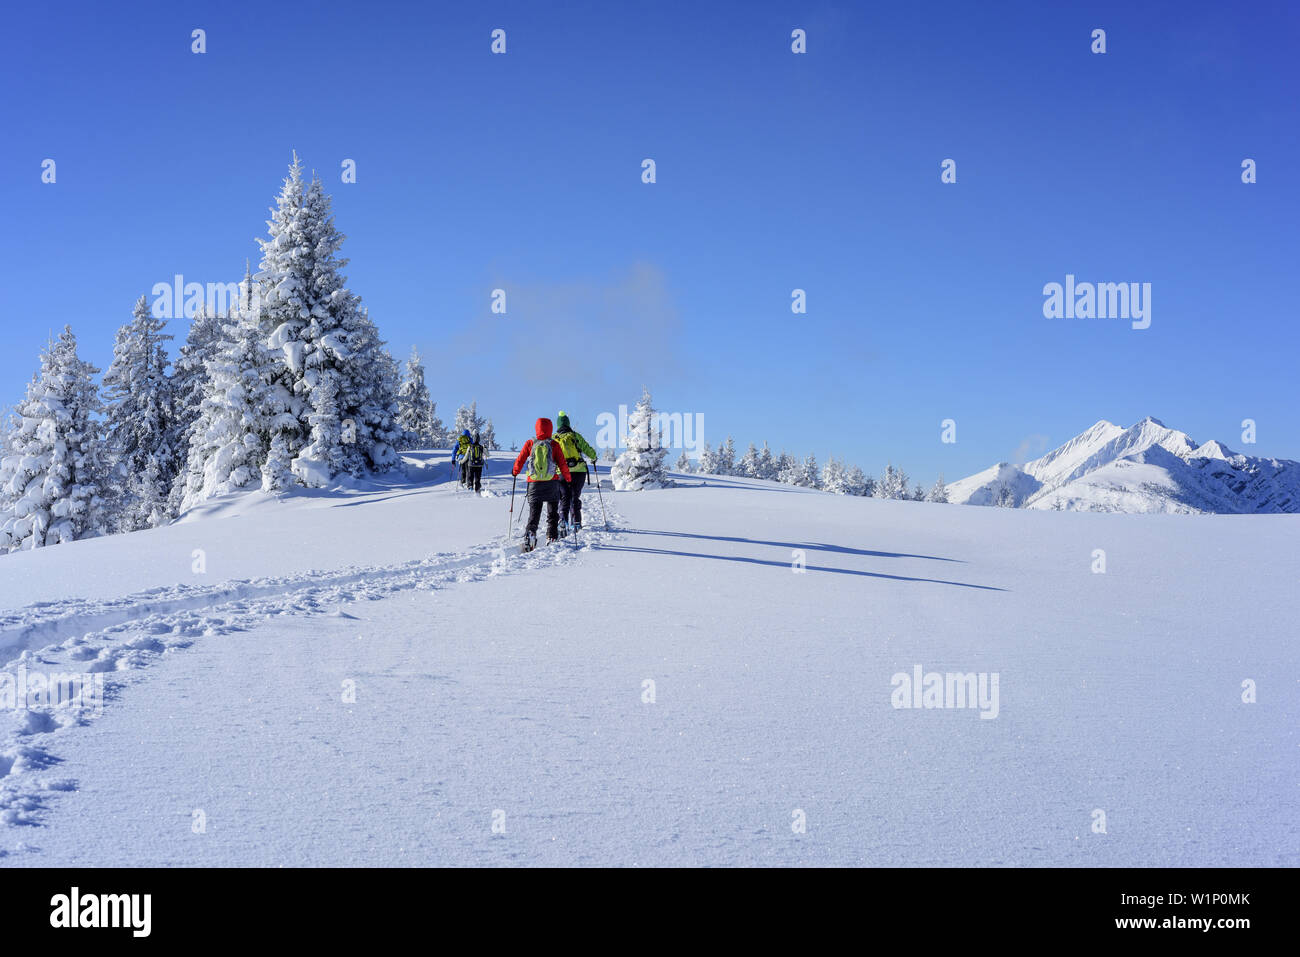 Quatre personnes ski de croissant sur large gamme snowface, Mangfall, Alpes bavaroises, Upper Bavaria, Bavaria, Germany Banque D'Images